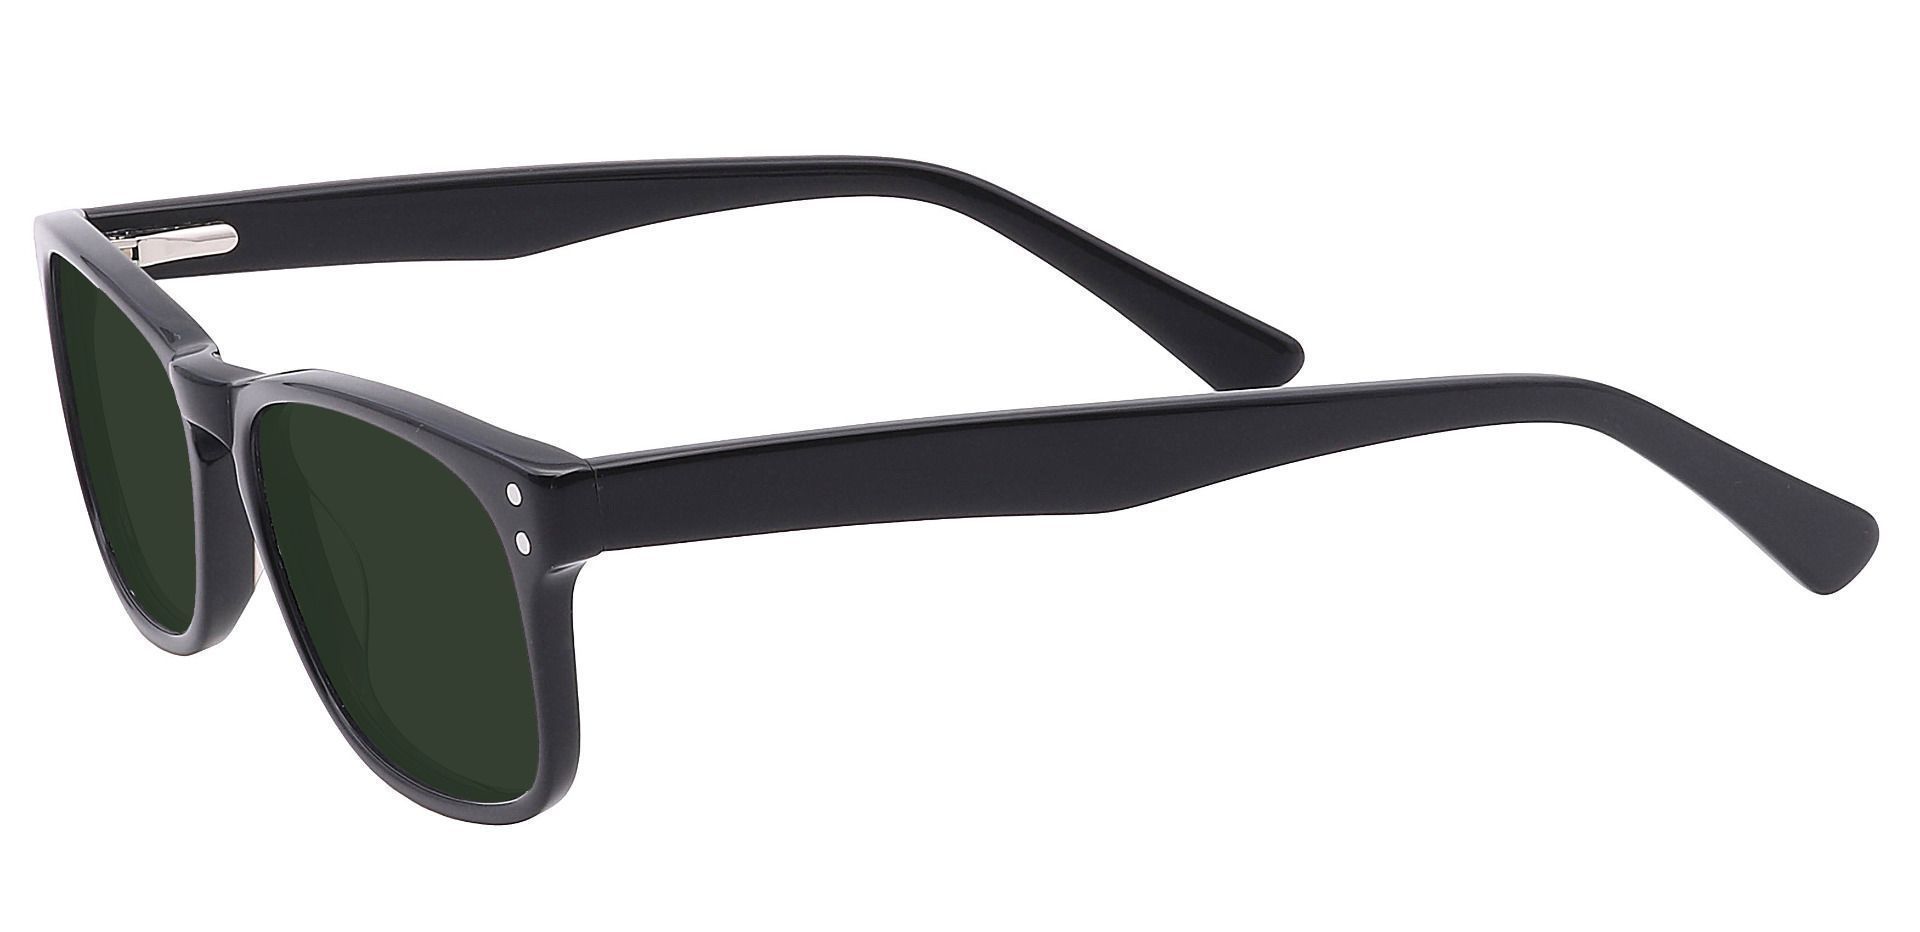 Morris Rectangle Prescription Sunglasses - Black Frame With Green Lenses